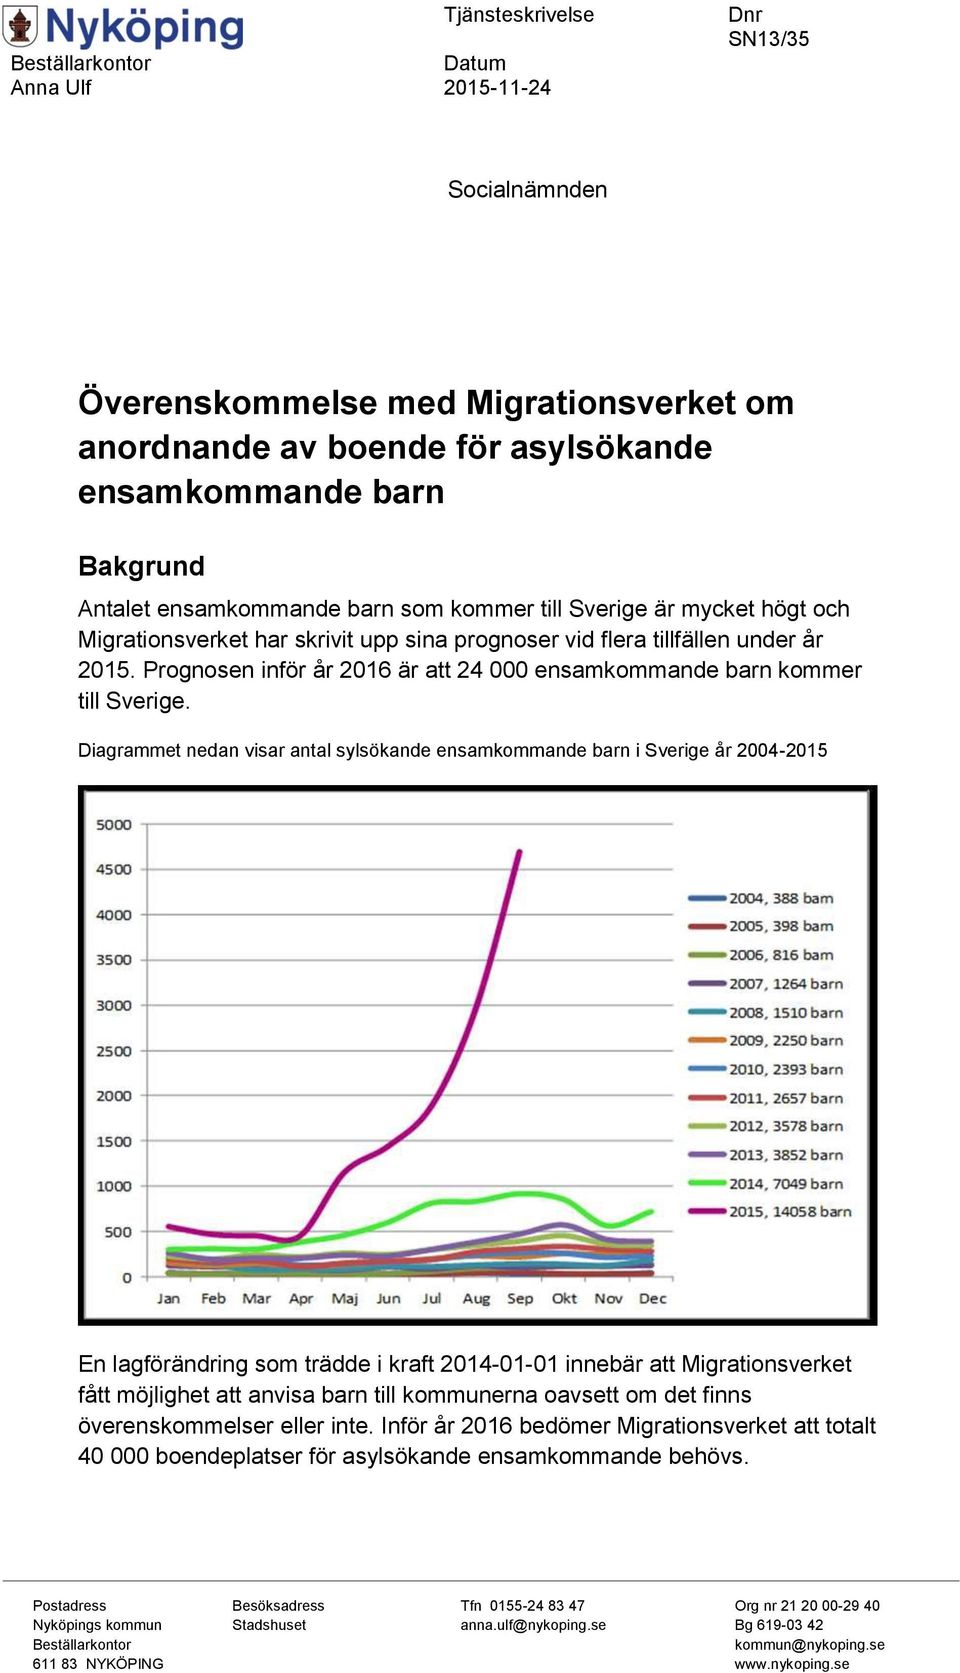 Prognosen inför år 2016 är att 24 000 ensamkommande barn kommer till Sverige.